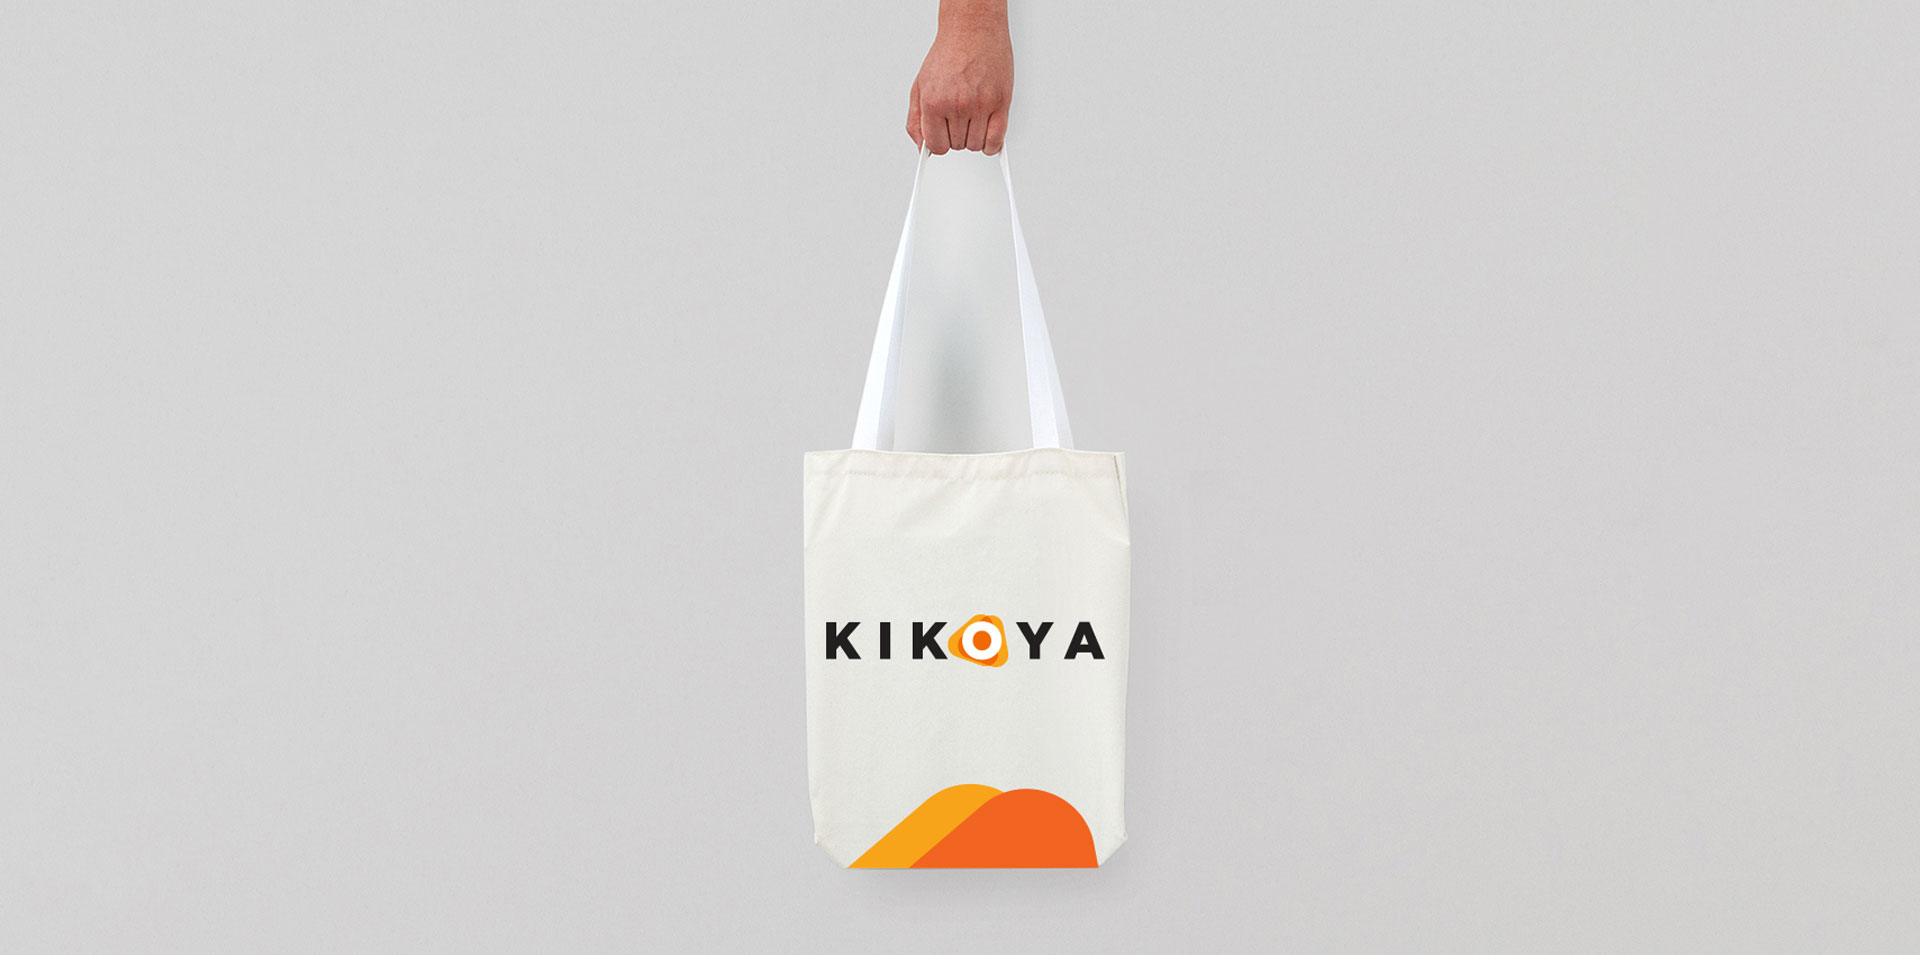 Kikoya Kurumsal Kimlik Tasarımı